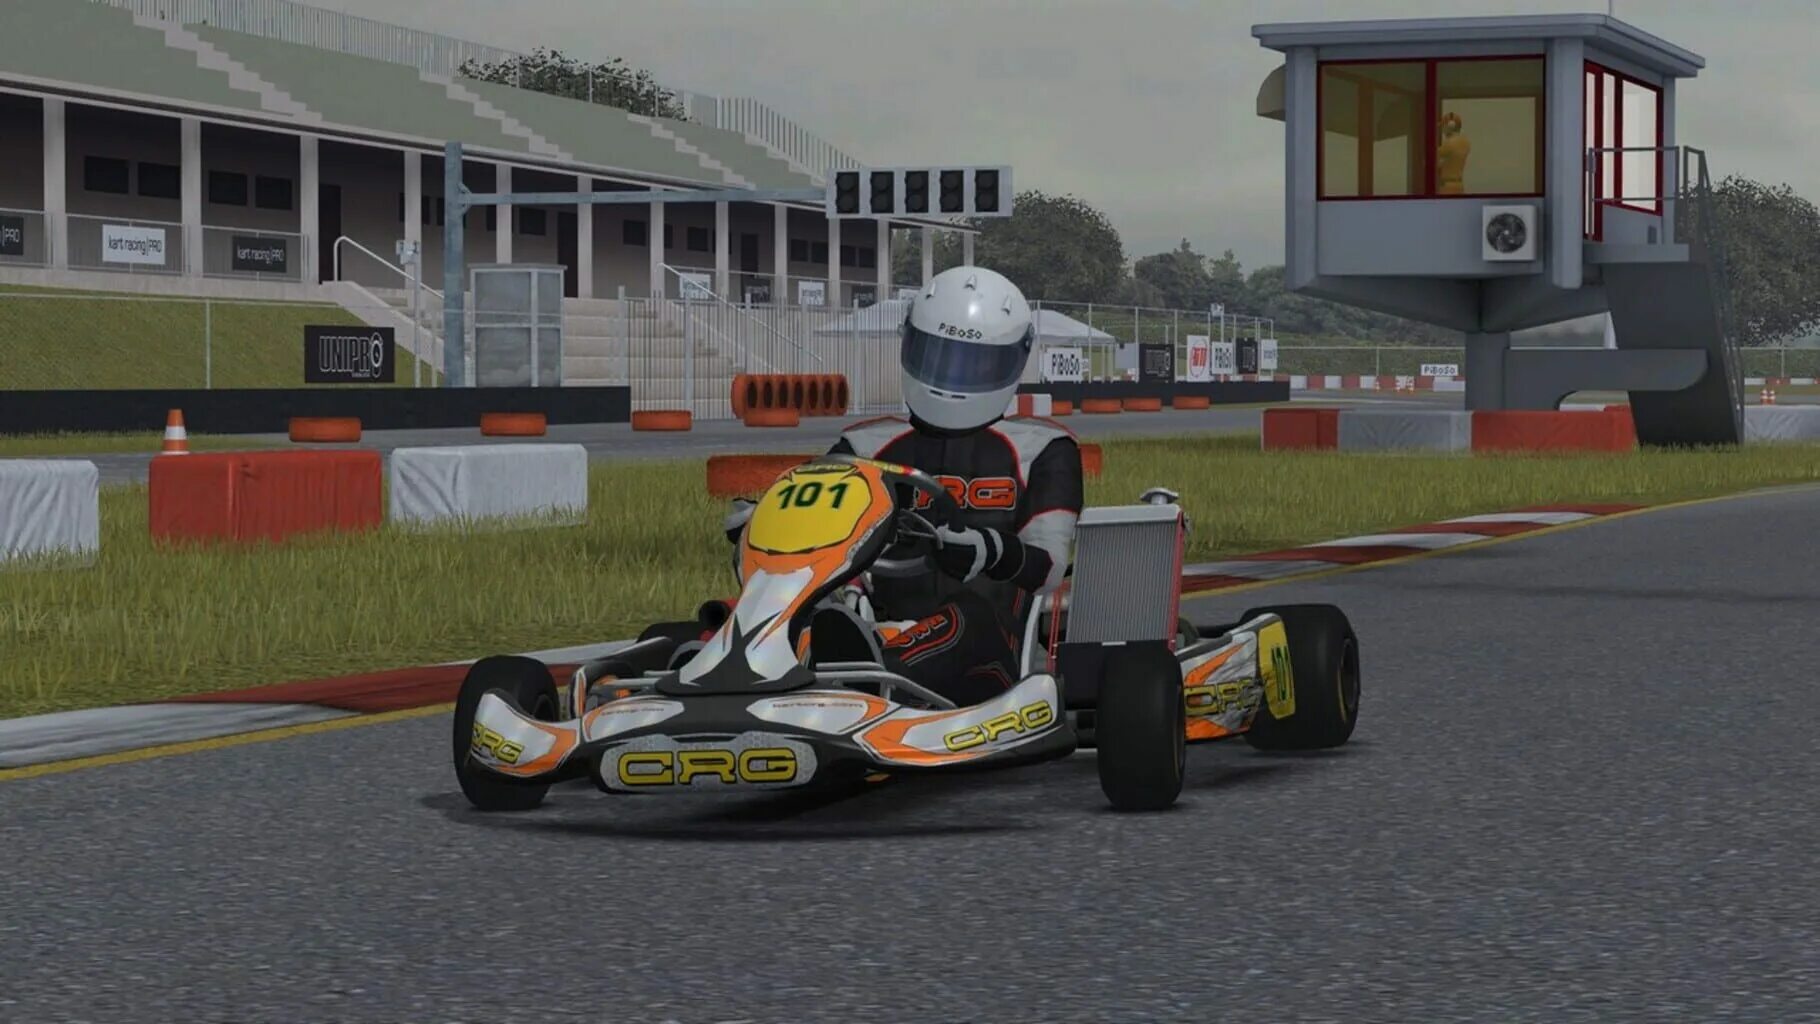 Kart Racing Pro. Kart Racing Pro системные требования. Симулятор картинга. Картинг GP Racing 2008 года.